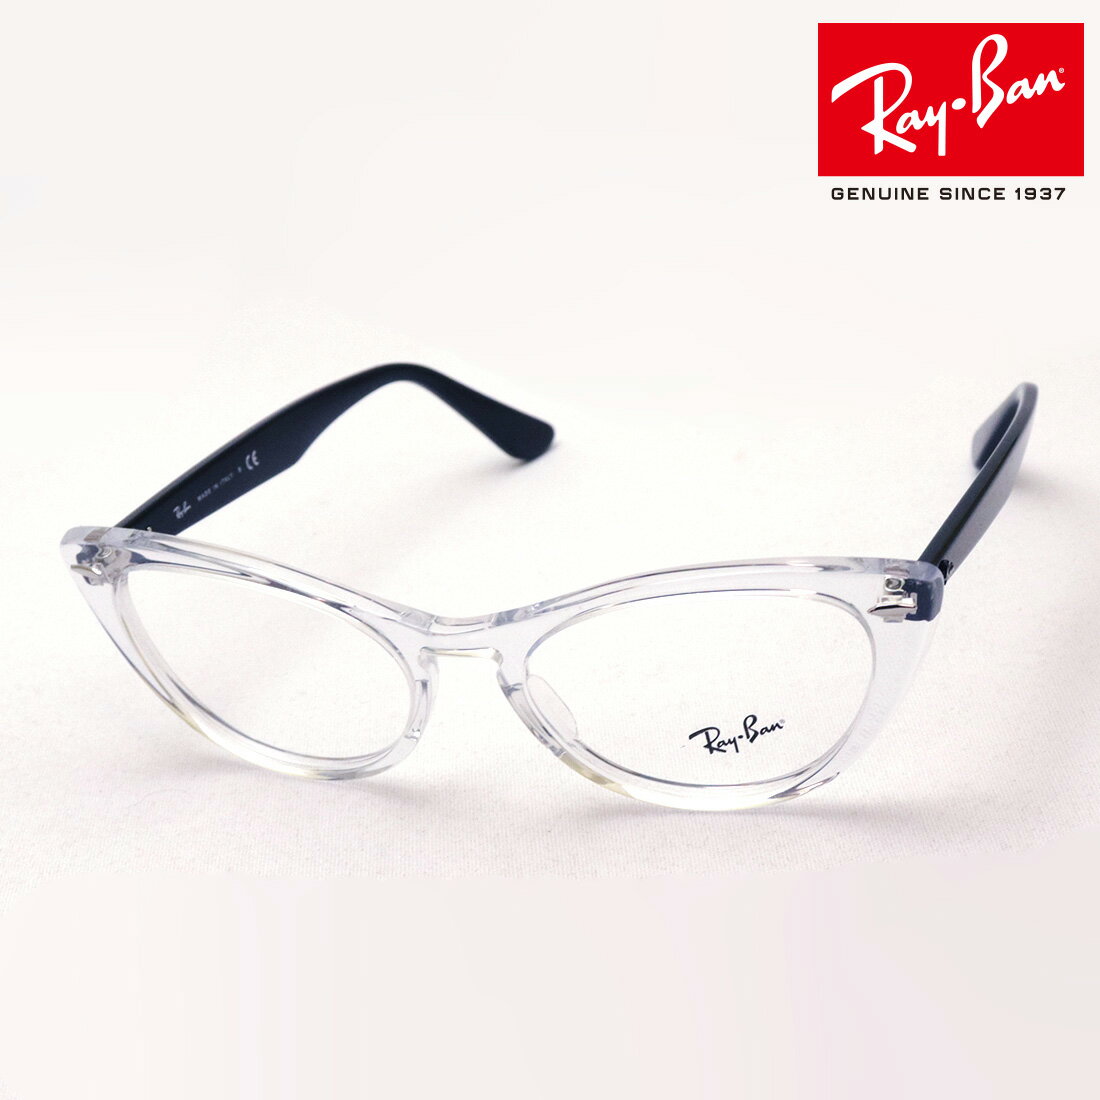 プレミア生産終了モデル 正規レイバン日本最大級の品揃え レイバン メガネ フレーム ニナ Ray-Ban RX4314V 5943 伊達メガネ 度付き ブルーライト カット 眼鏡 RayBan Made In Italy フォックス クリア系